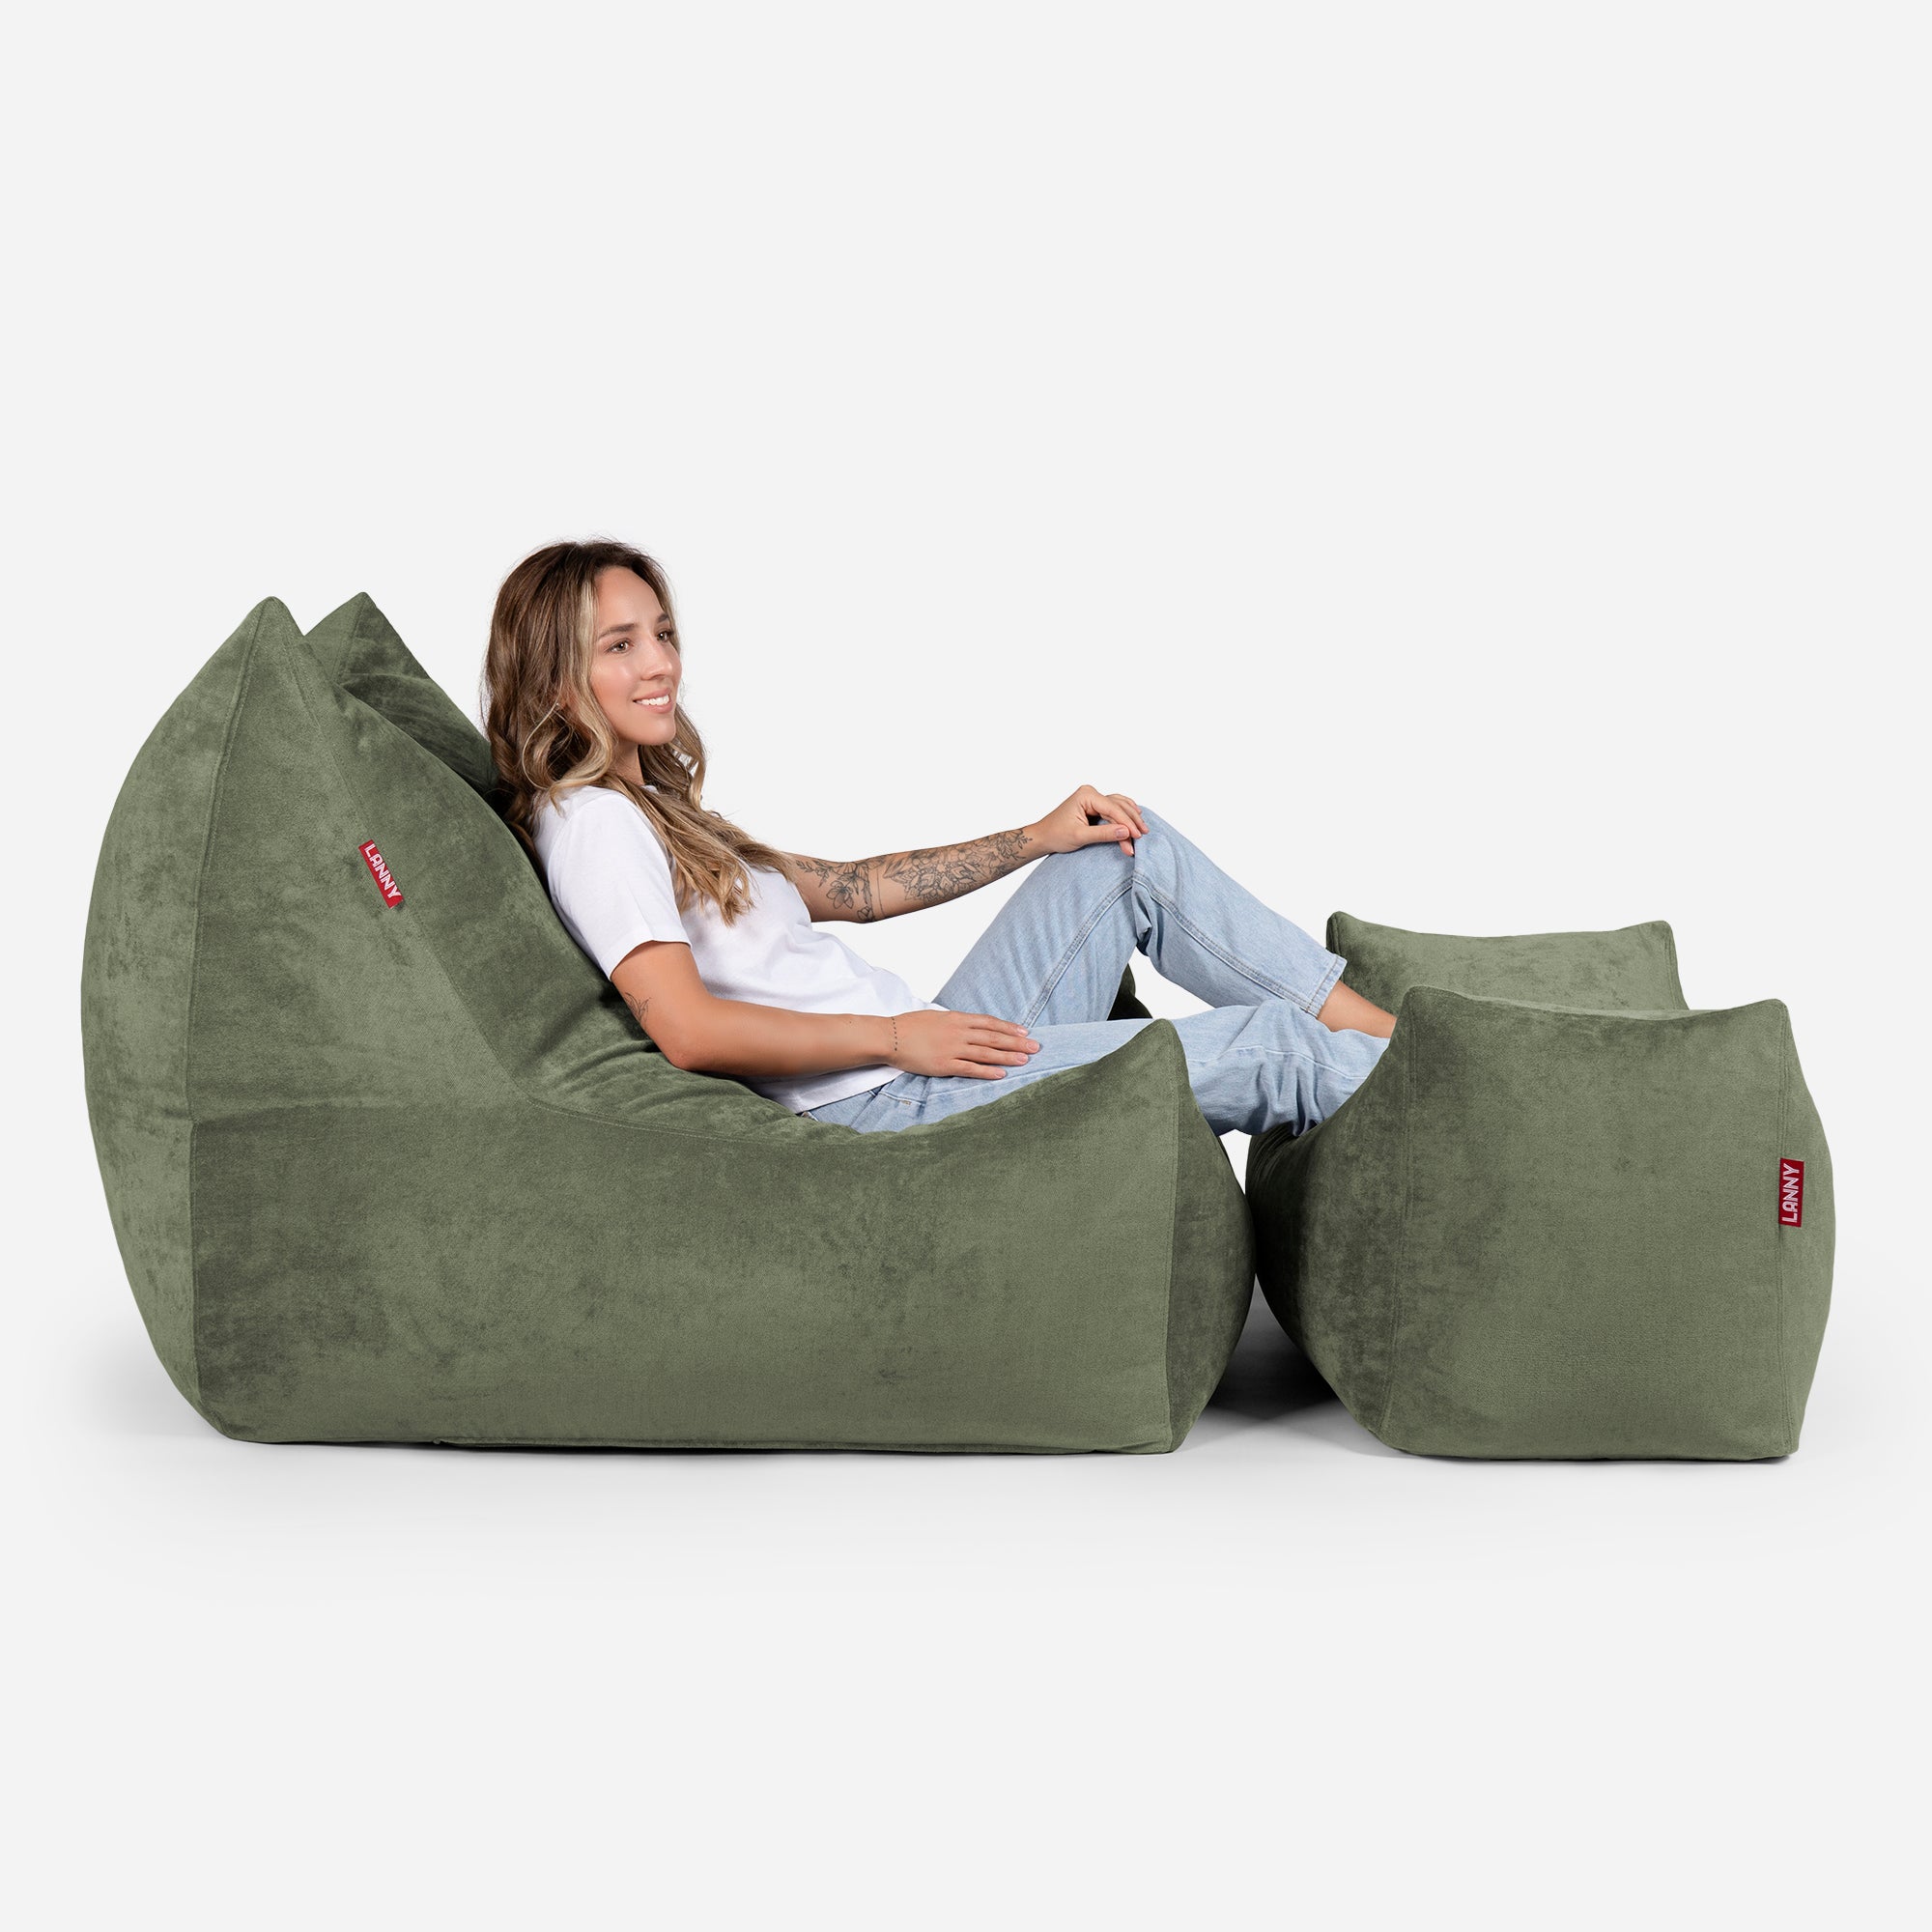 Quadro Aldo Khaki Bean bag Chair